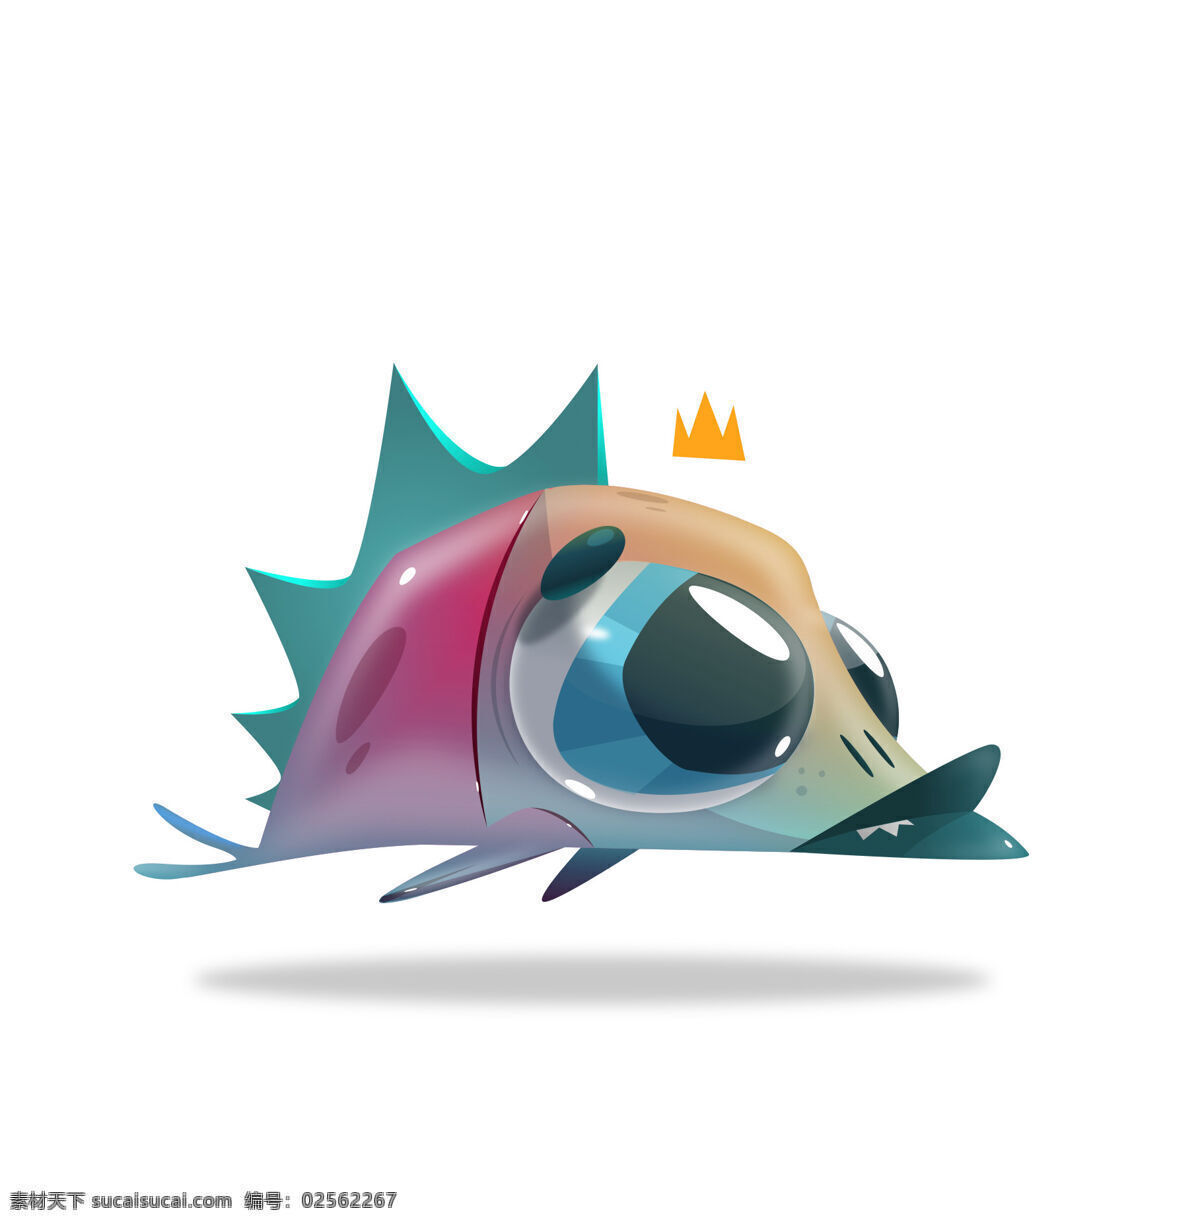 深海鱼 怪兽 插画 鱼 大头鱼 卡通 可爱 动漫